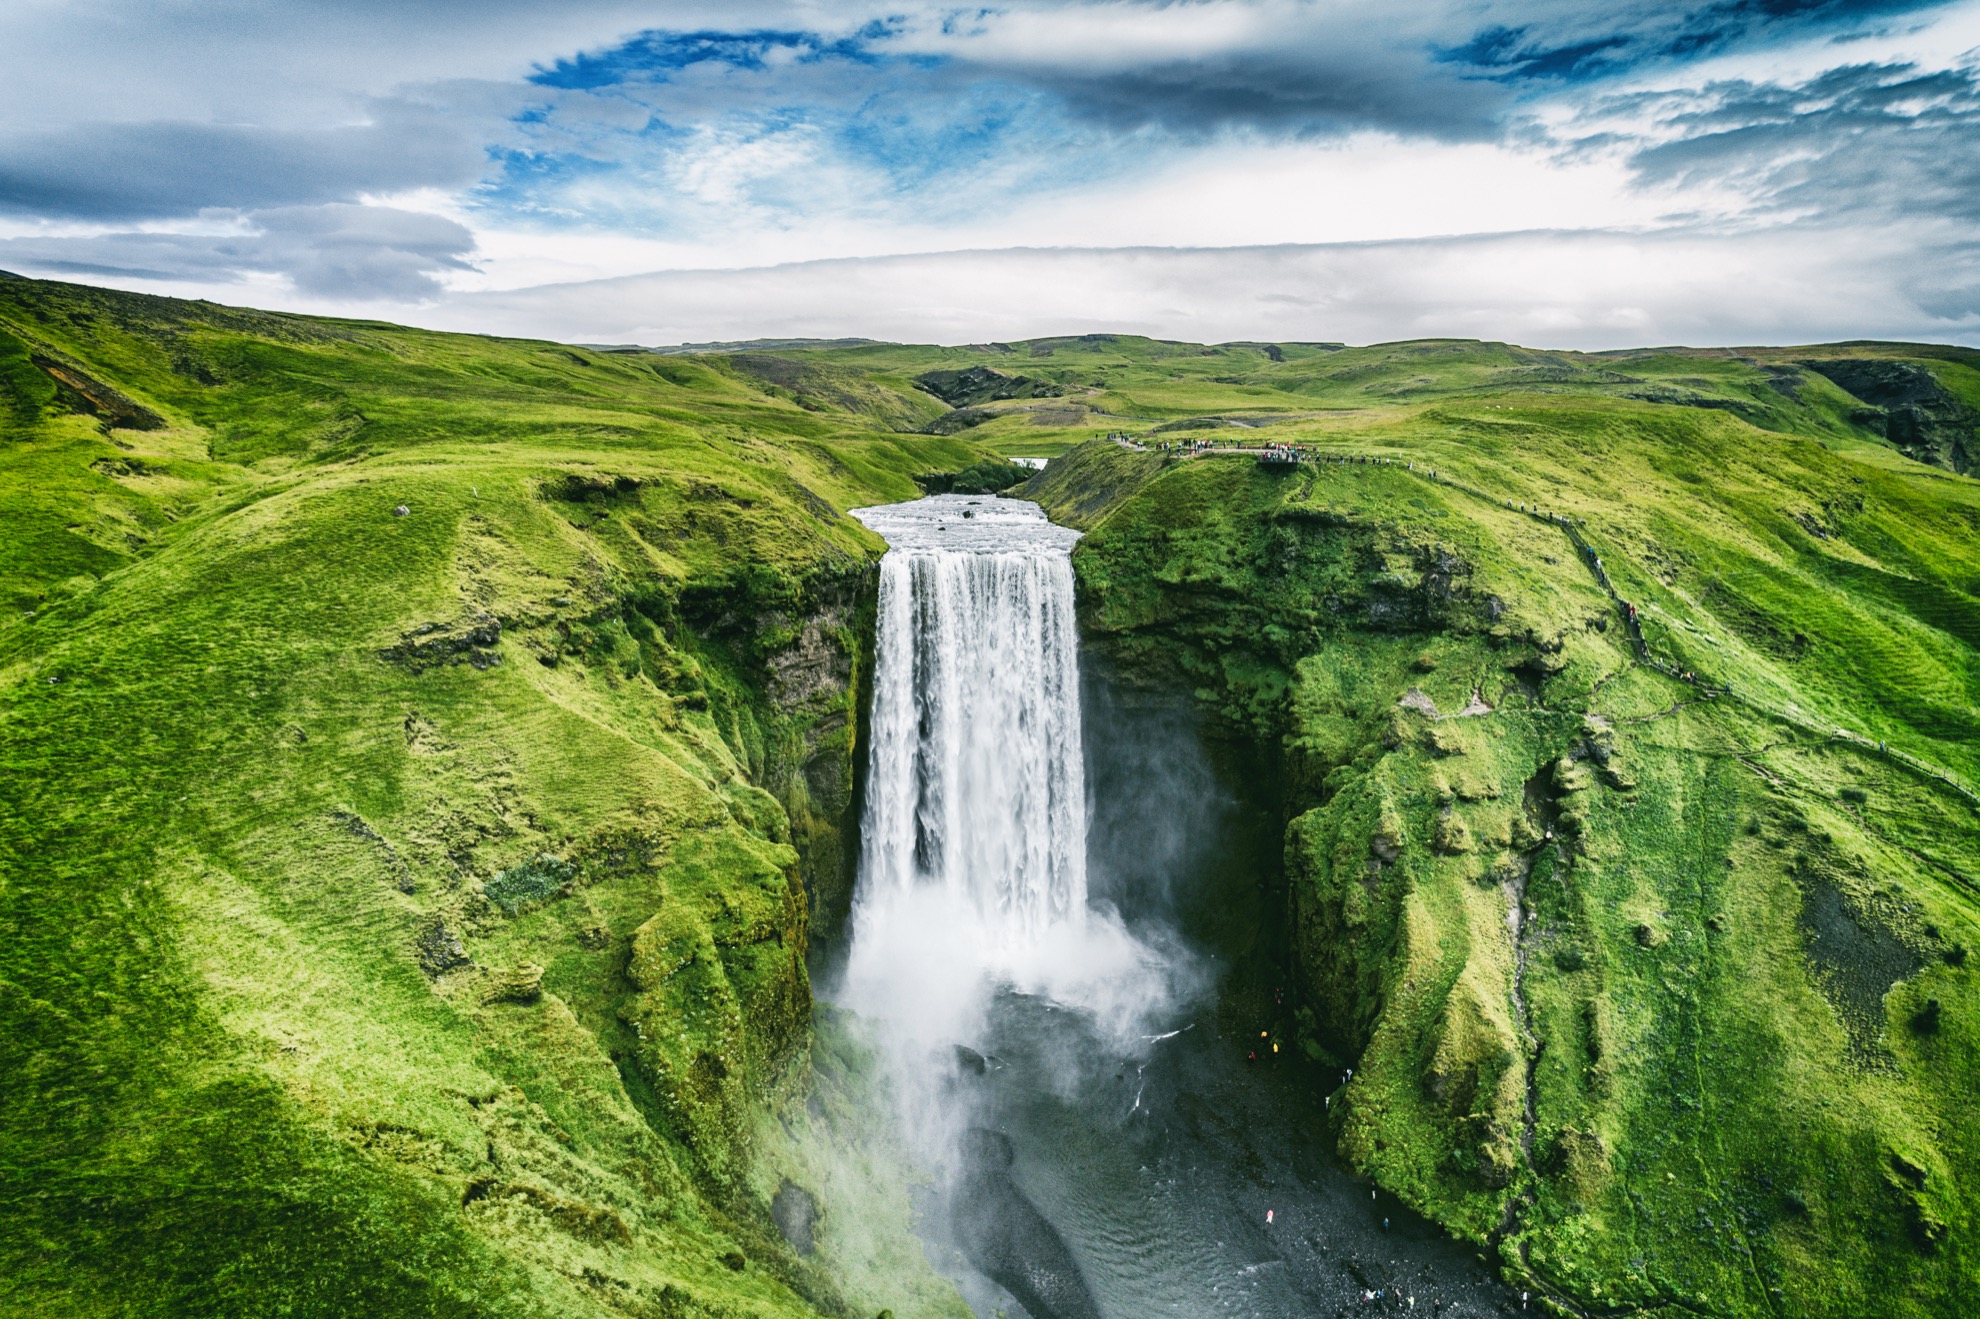 La leyenda dice que la impresionante cascada de Skógafoss de Islandia es el hogar del tesoro escondido - 41